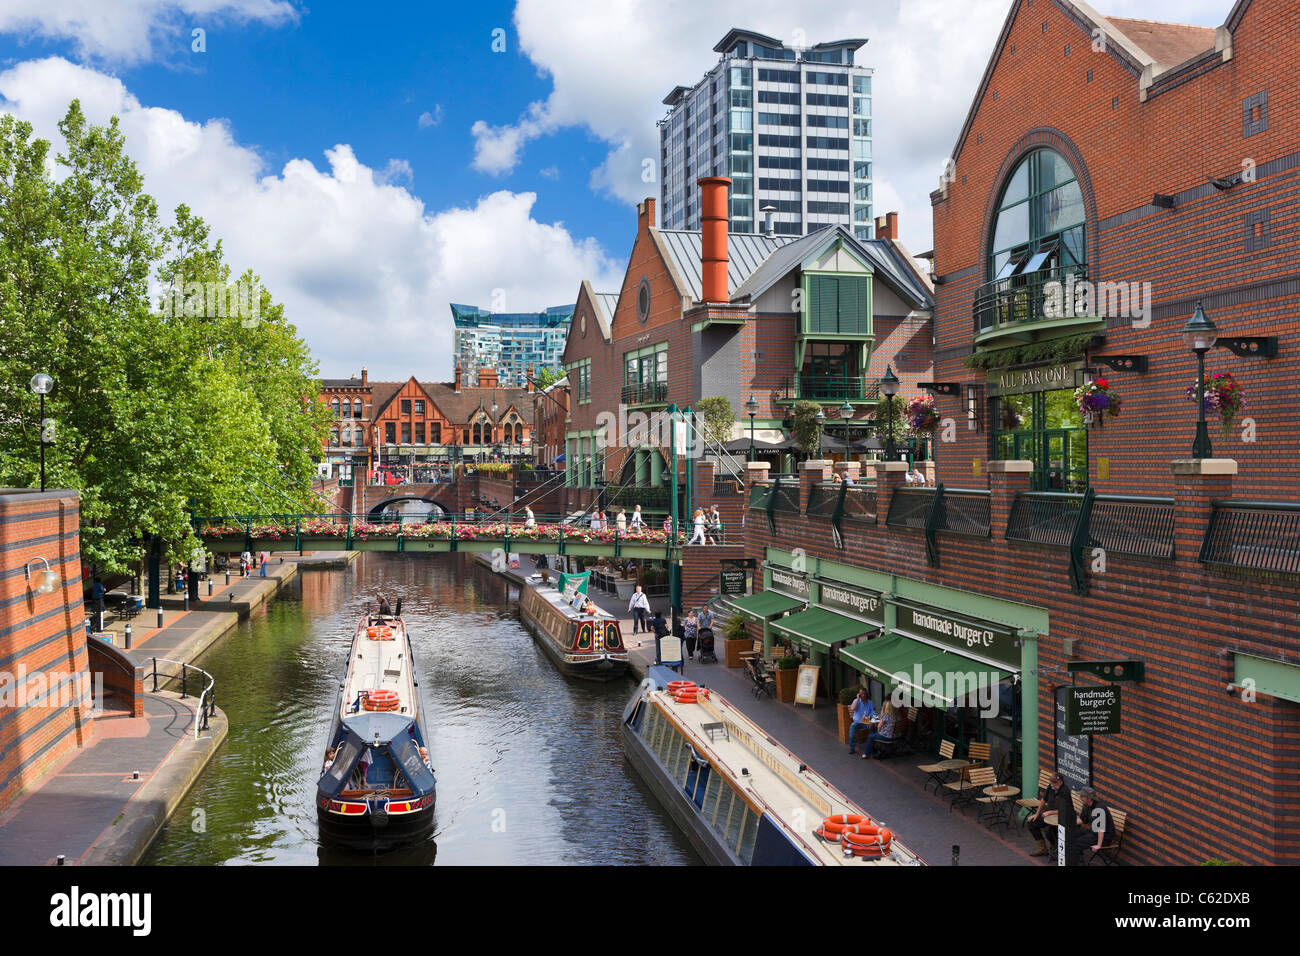 Schmalboote vor Restaurants am Kanal am Brindley Place, Birmingham, Großbritannien Stockfoto